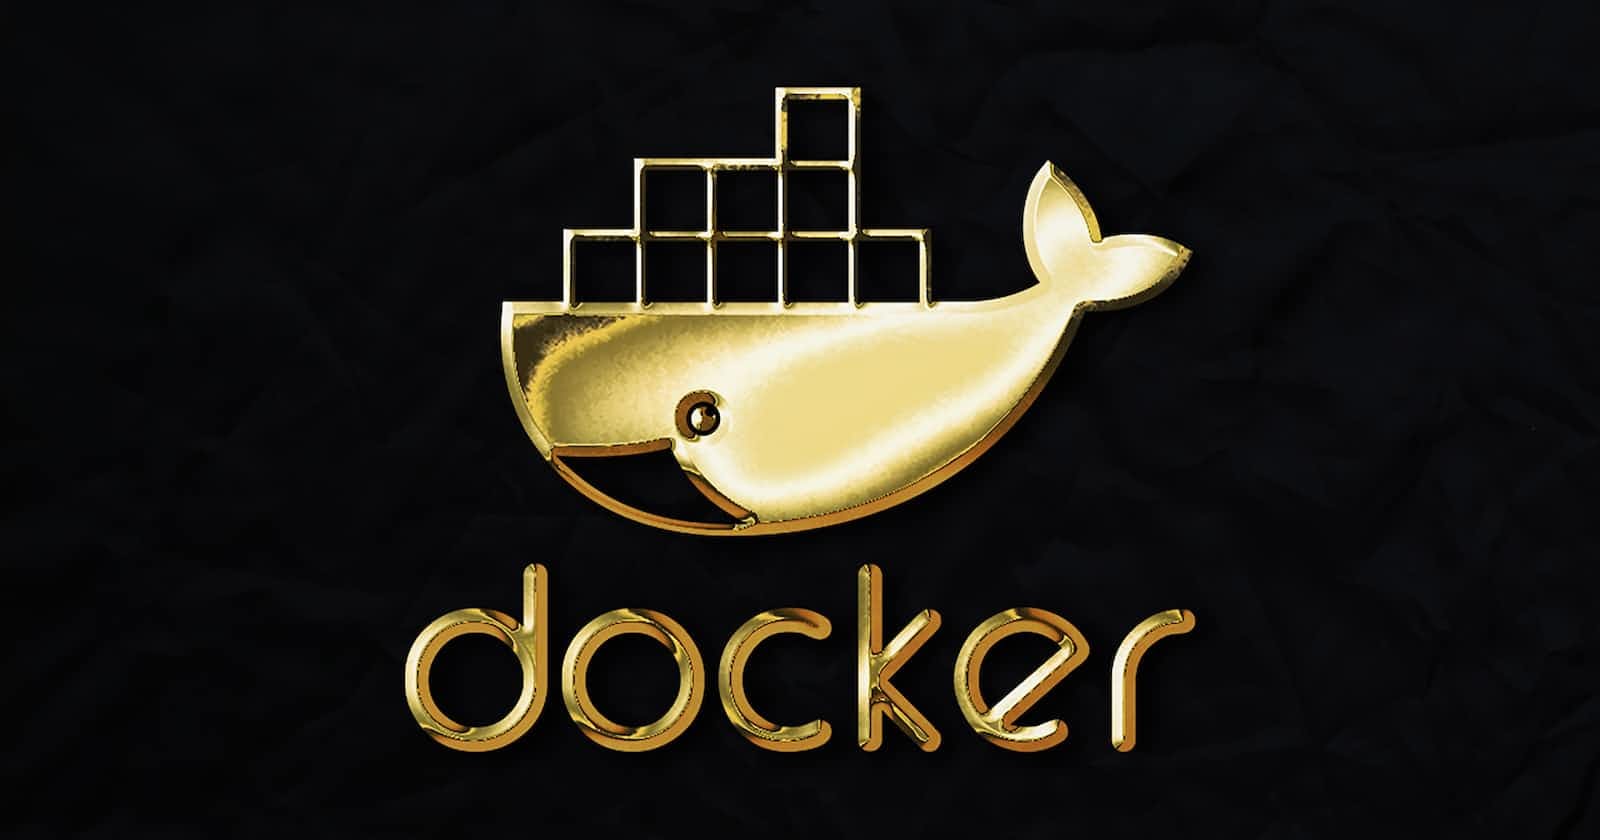 SSH forwarding with Docker